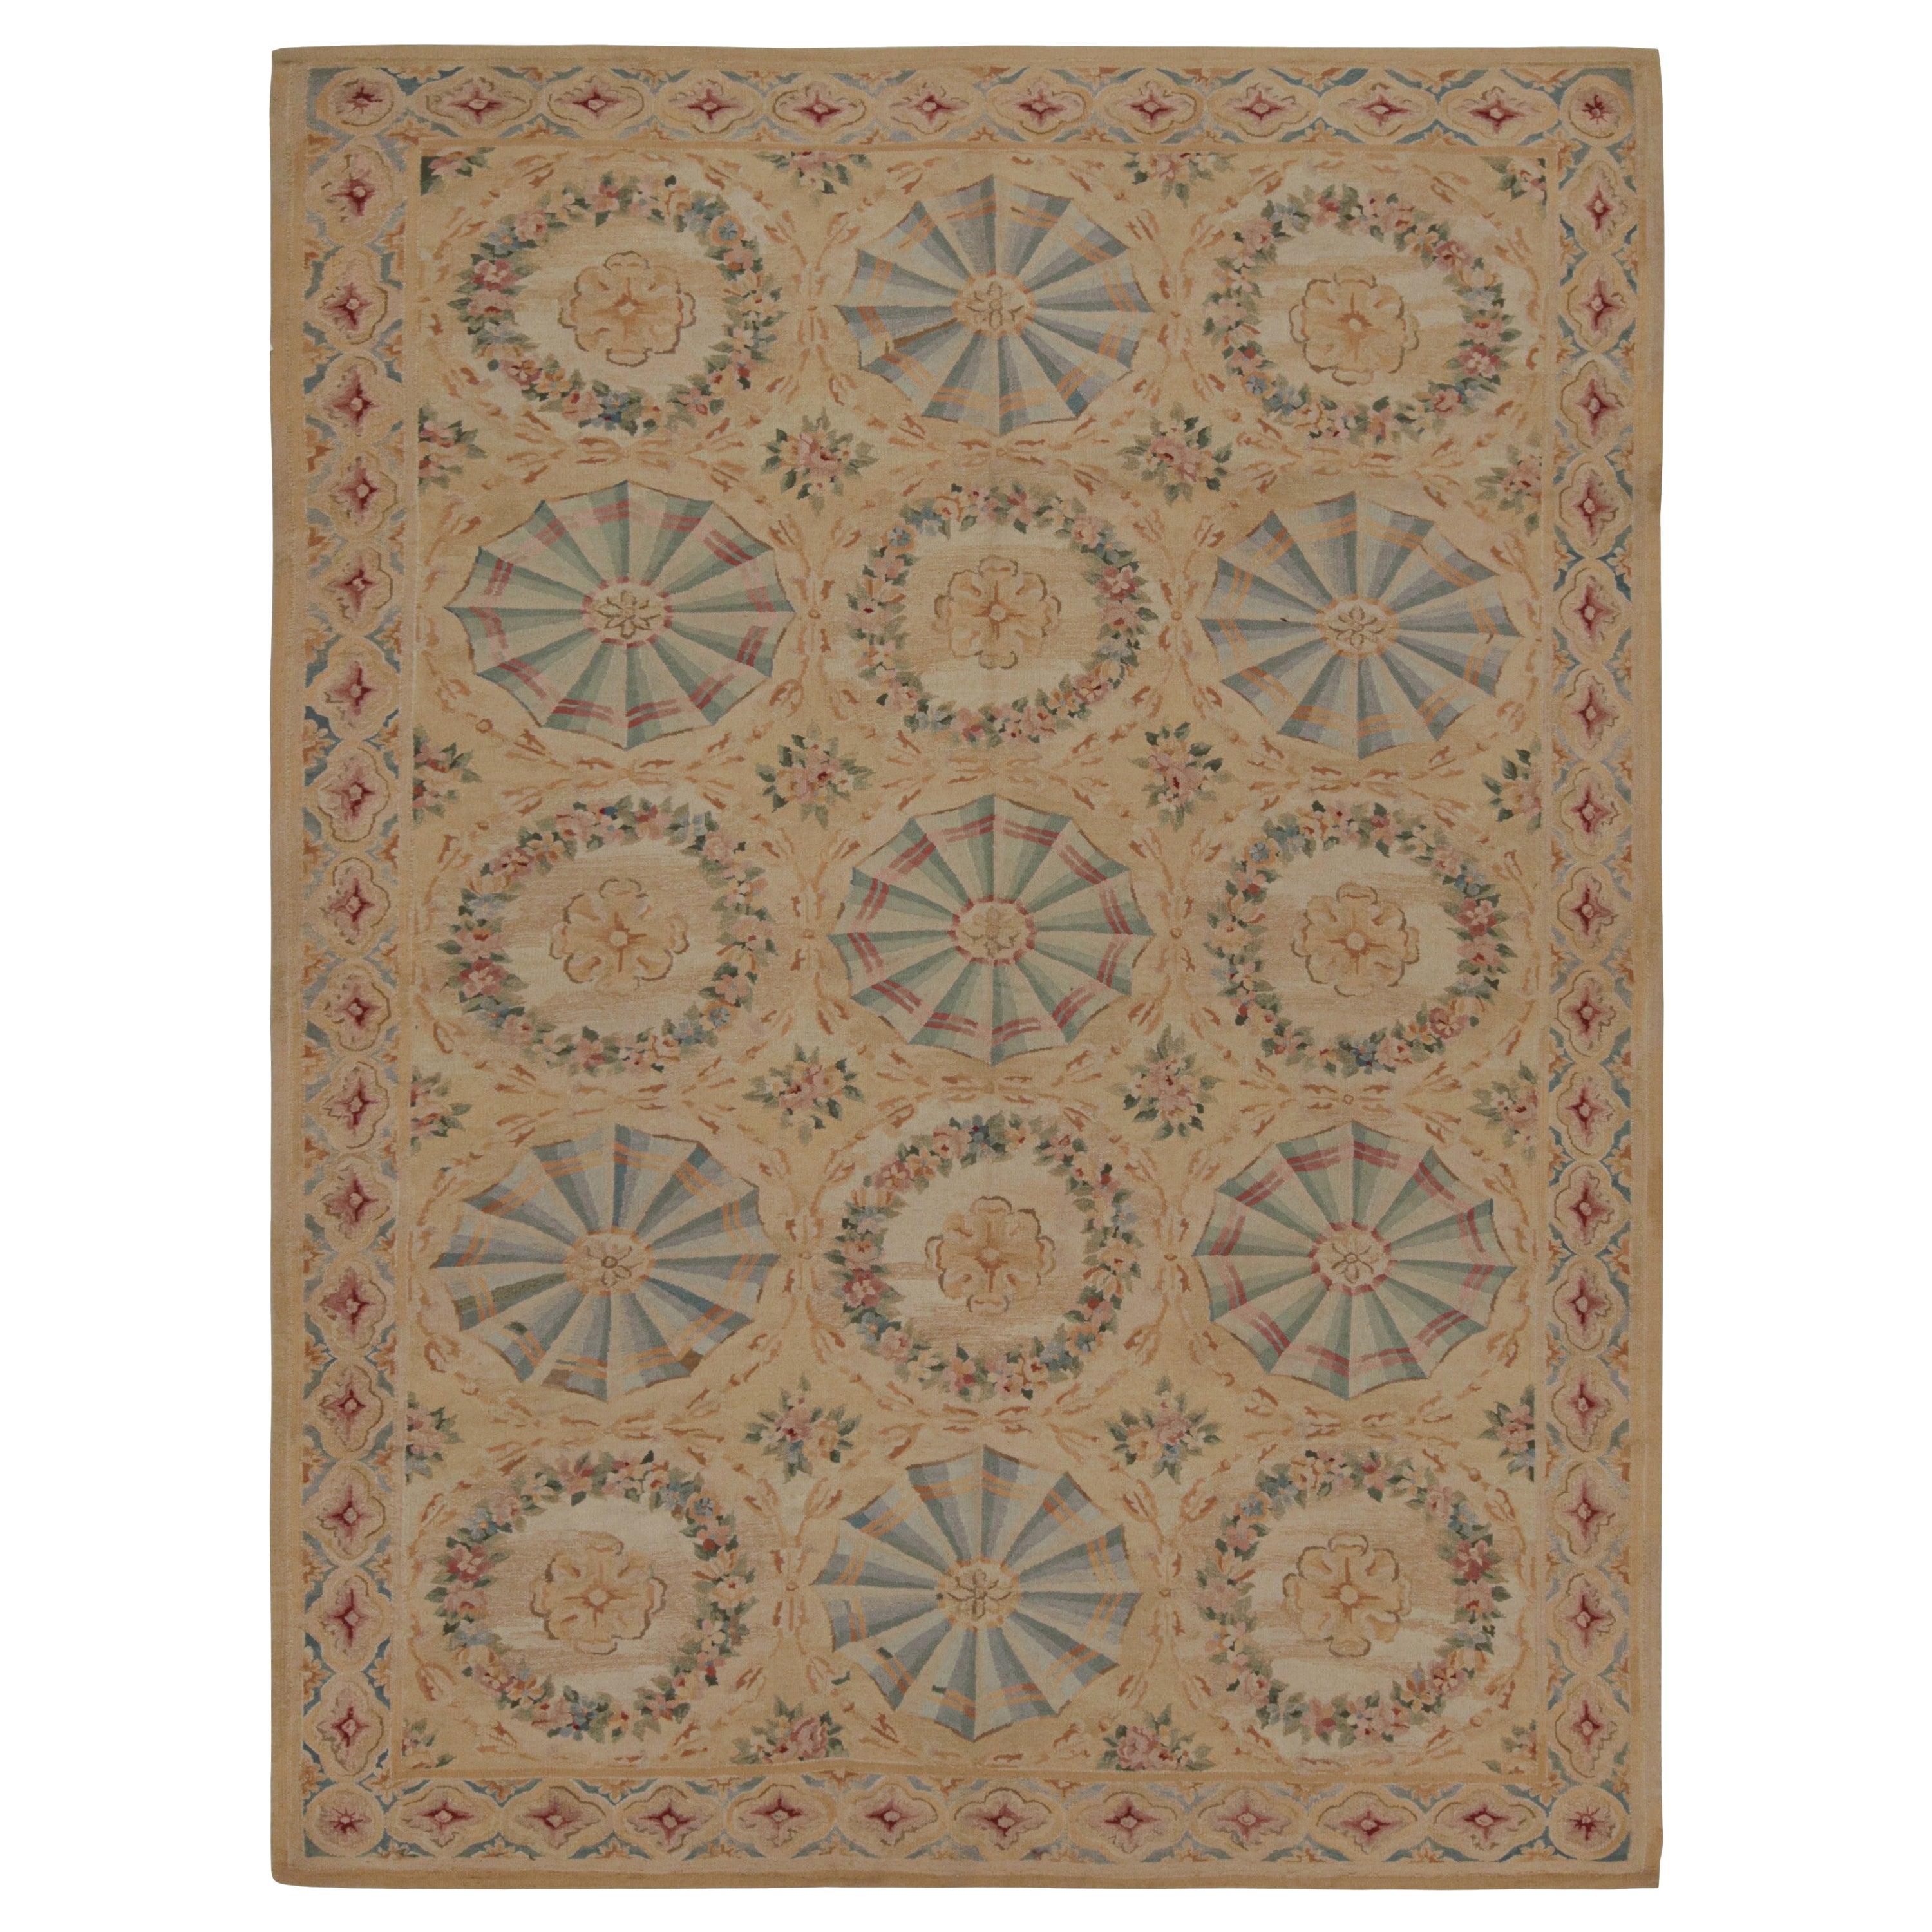 Rug & Kilim's Aubusson Style Flatweave Rug with Floral Patterns and Medallions (tapis tissé plat de style Aubusson avec des motifs floraux et des médaillons)